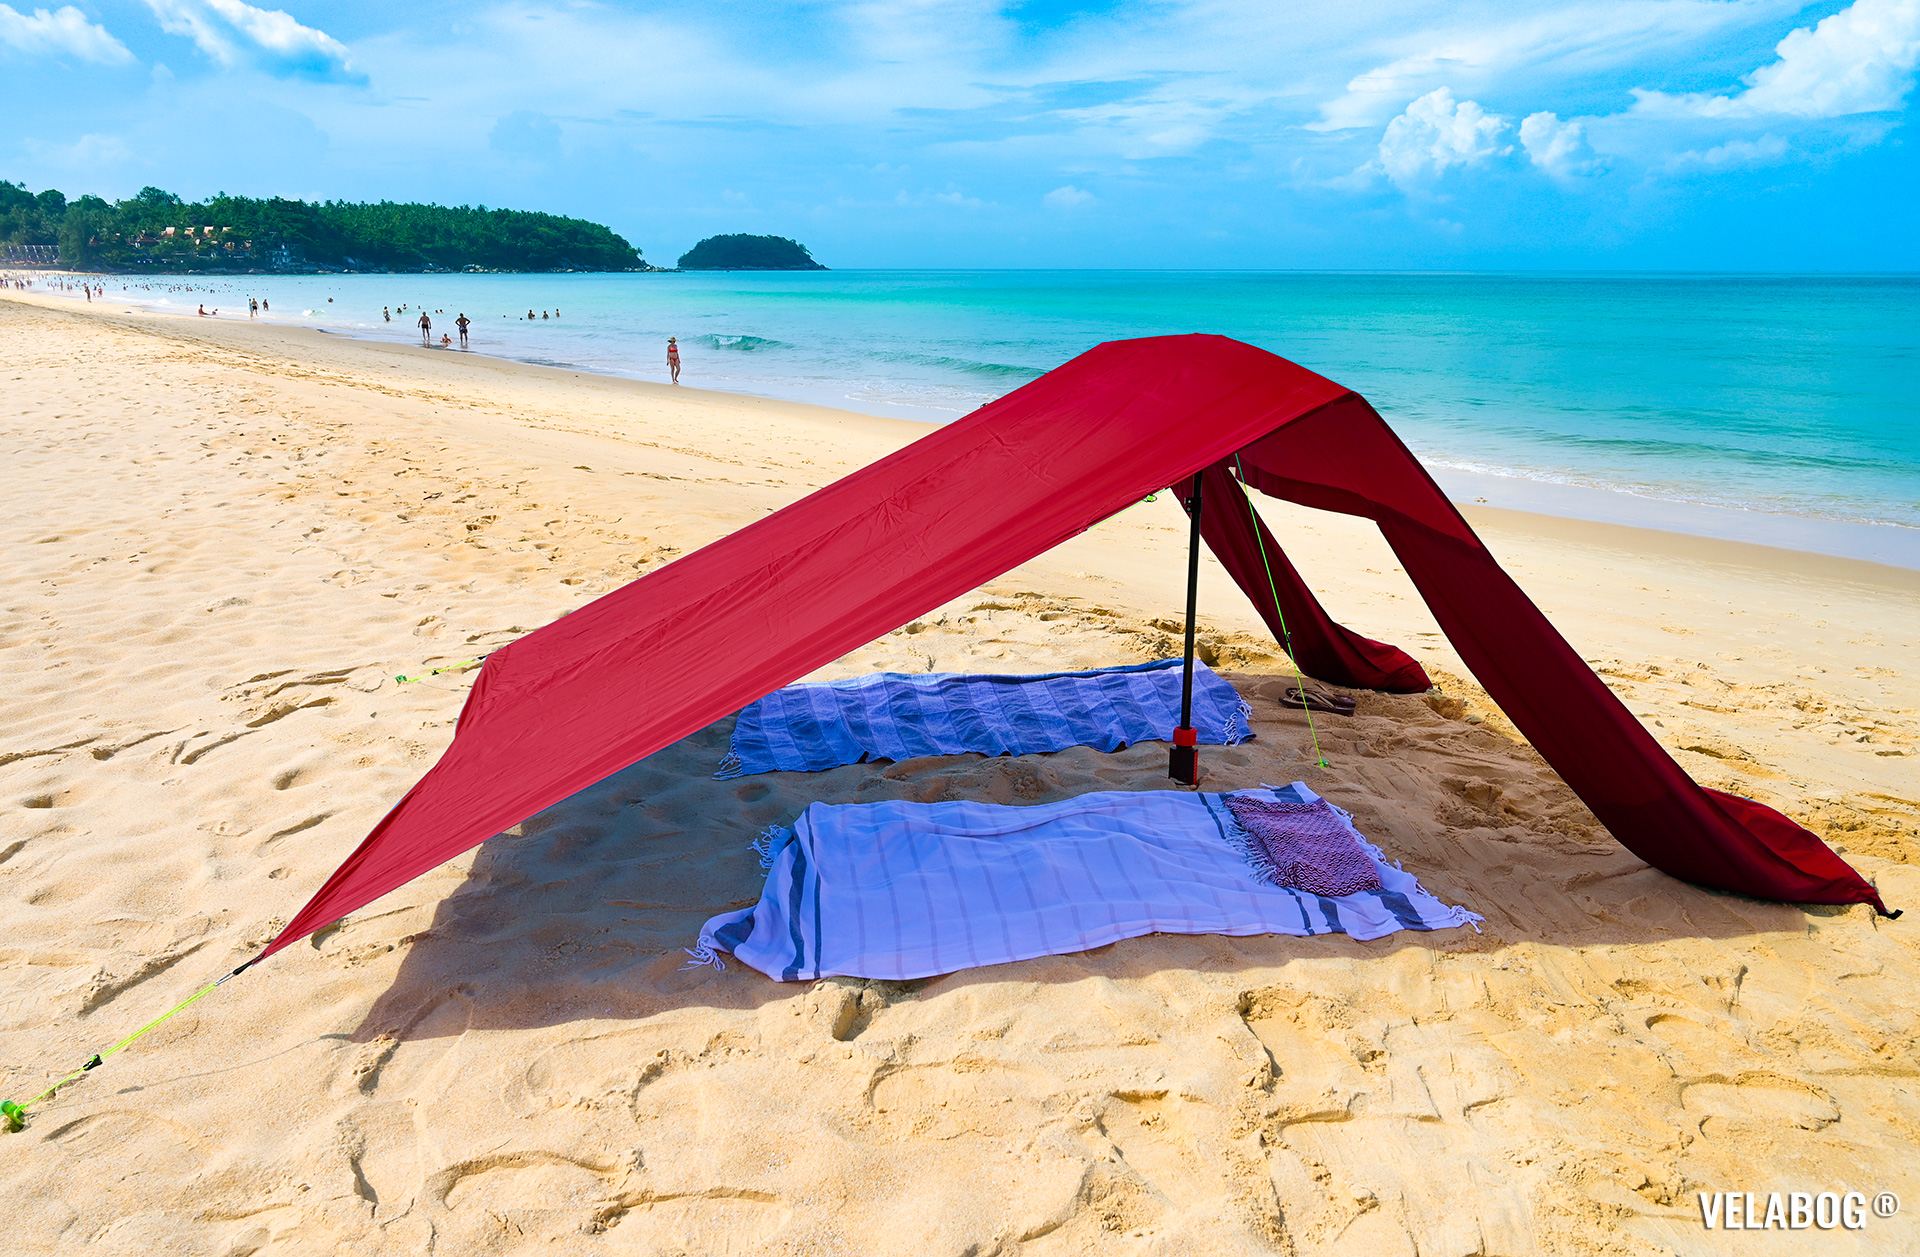 Strand Sonnensegel Strandzelt Velabog Breeze, rot. Bester Sonnenschutz am Strand auch wenn es kein Wind gibt. Test Strand Sonnensegel Aufbauoption - kein, leichter oder böiger Wind. Ansicht von der Seite.